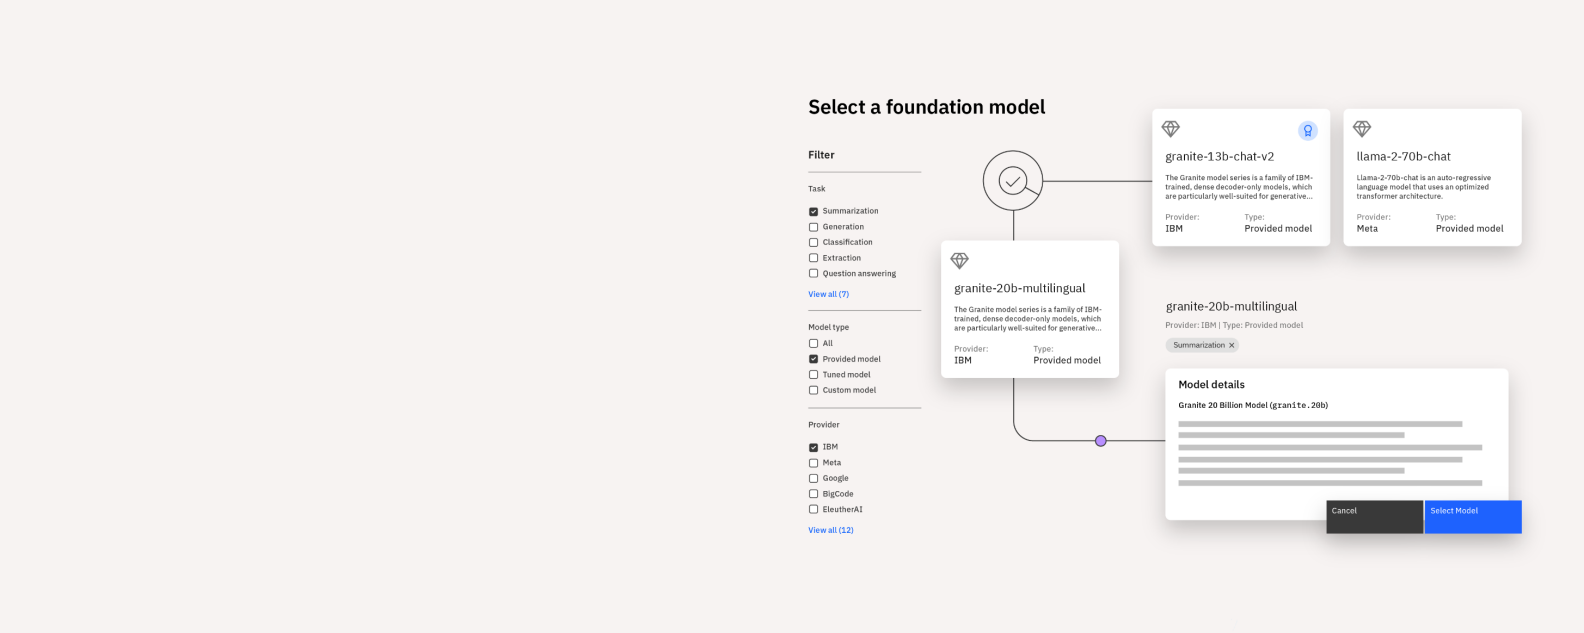 Product screenshot of watsonx.ai foundation models 